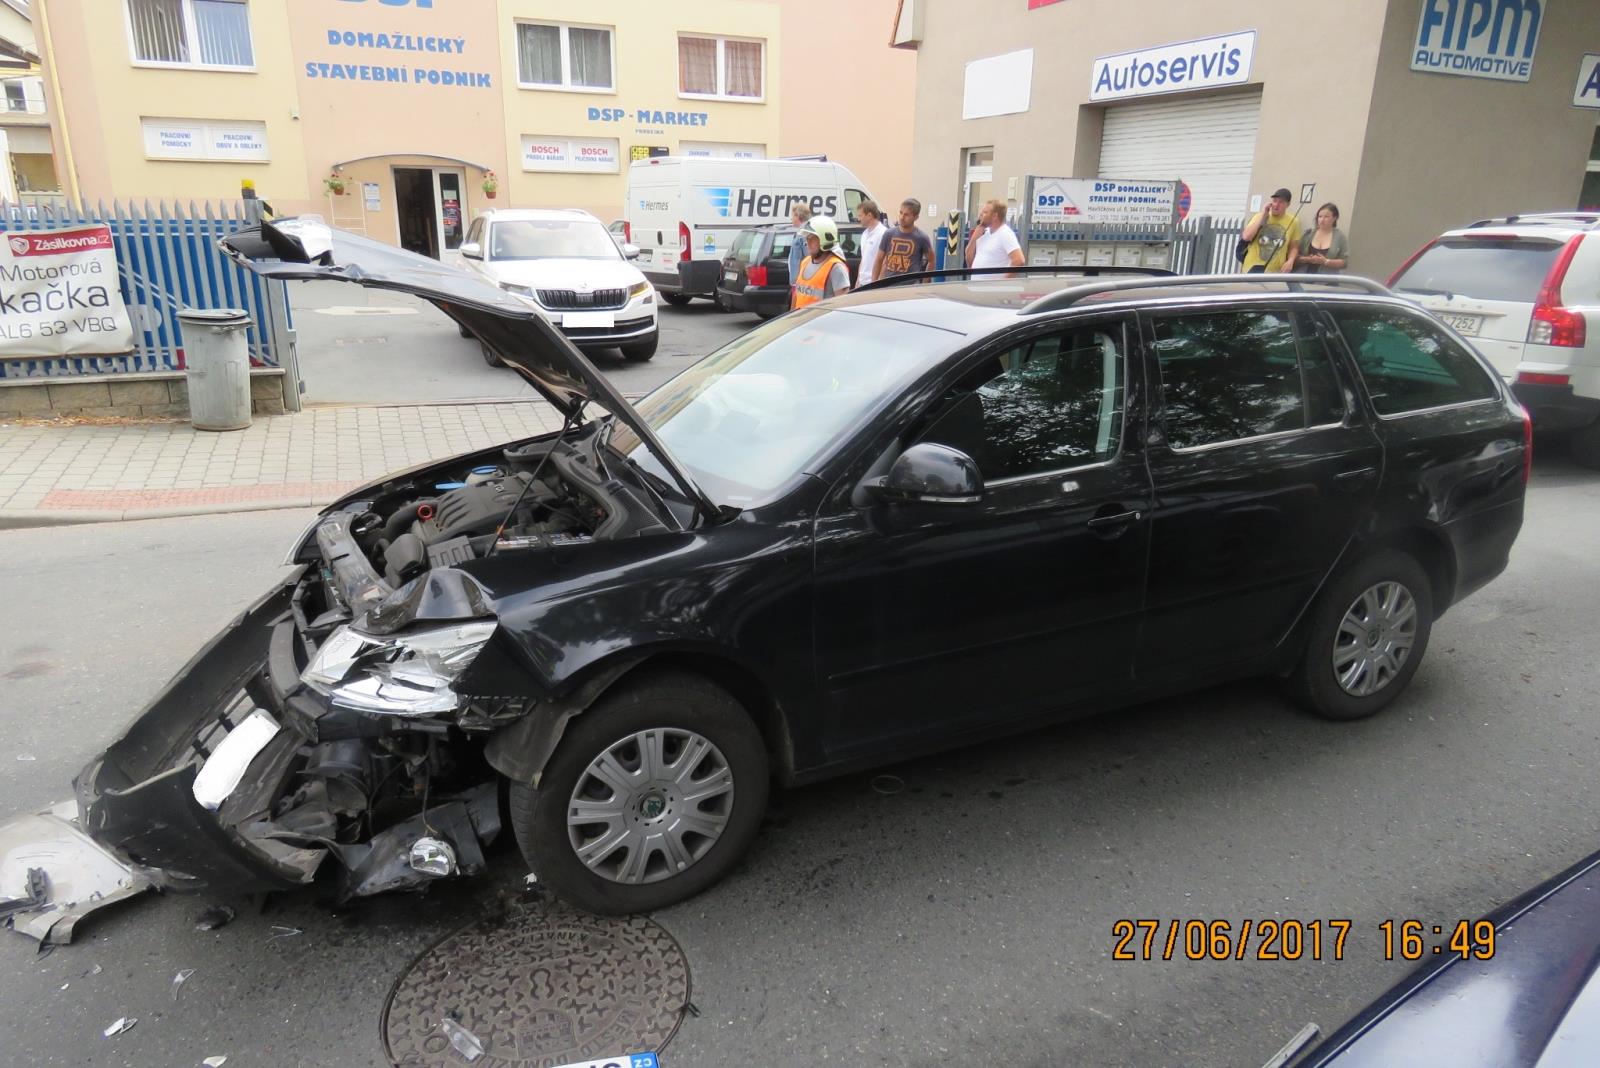 Dopravní nehoda - Domažlice - 27.06.2017